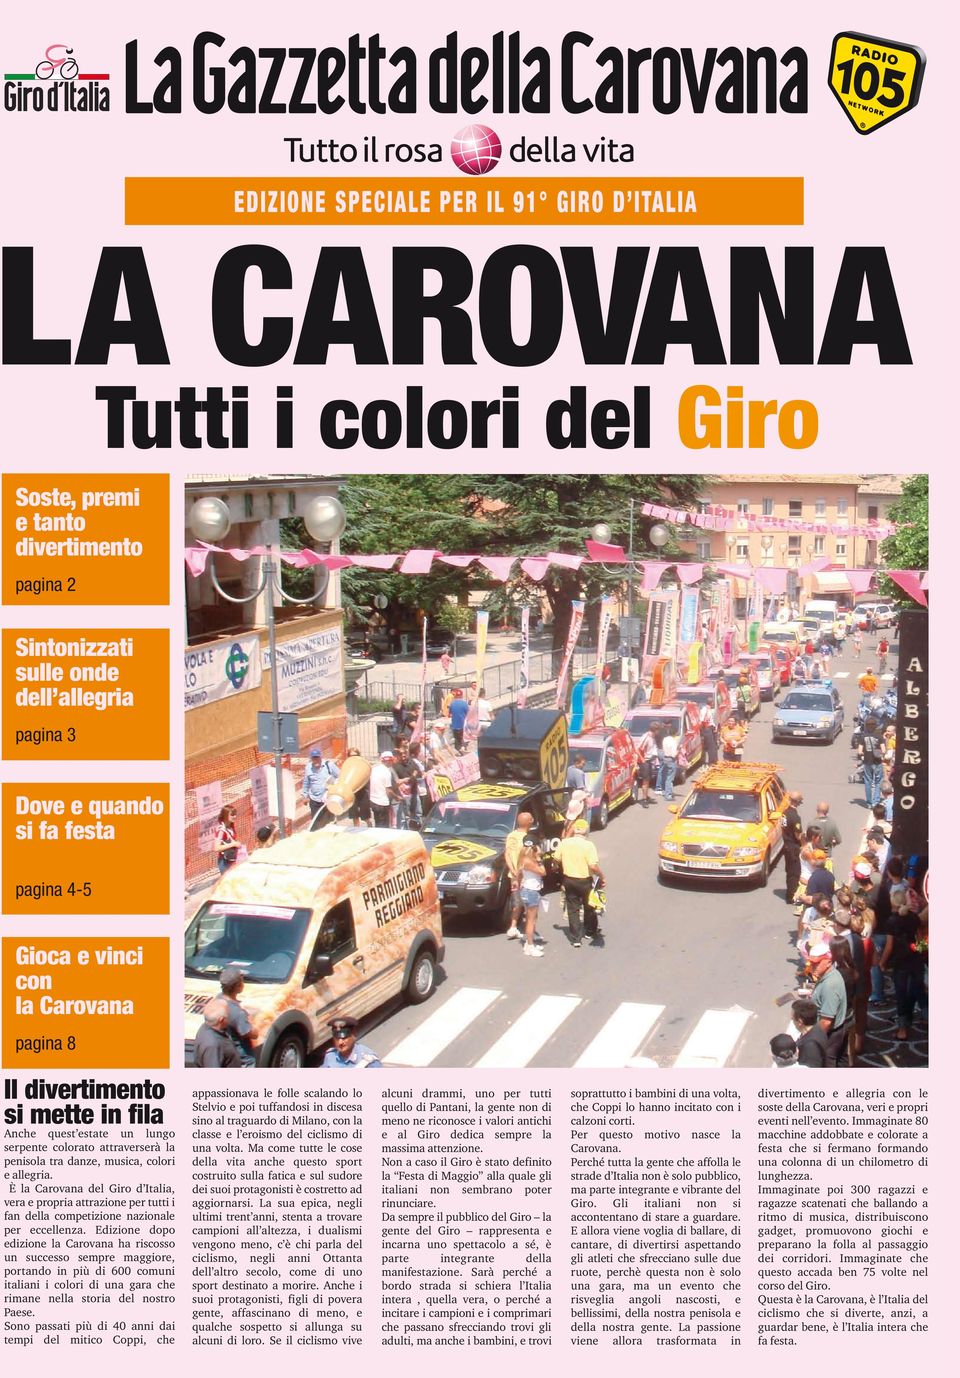 È la Carovana del Giro d Italia, vera e propria attrazione per tutti i fan della competizione nazionale per eccellenza.